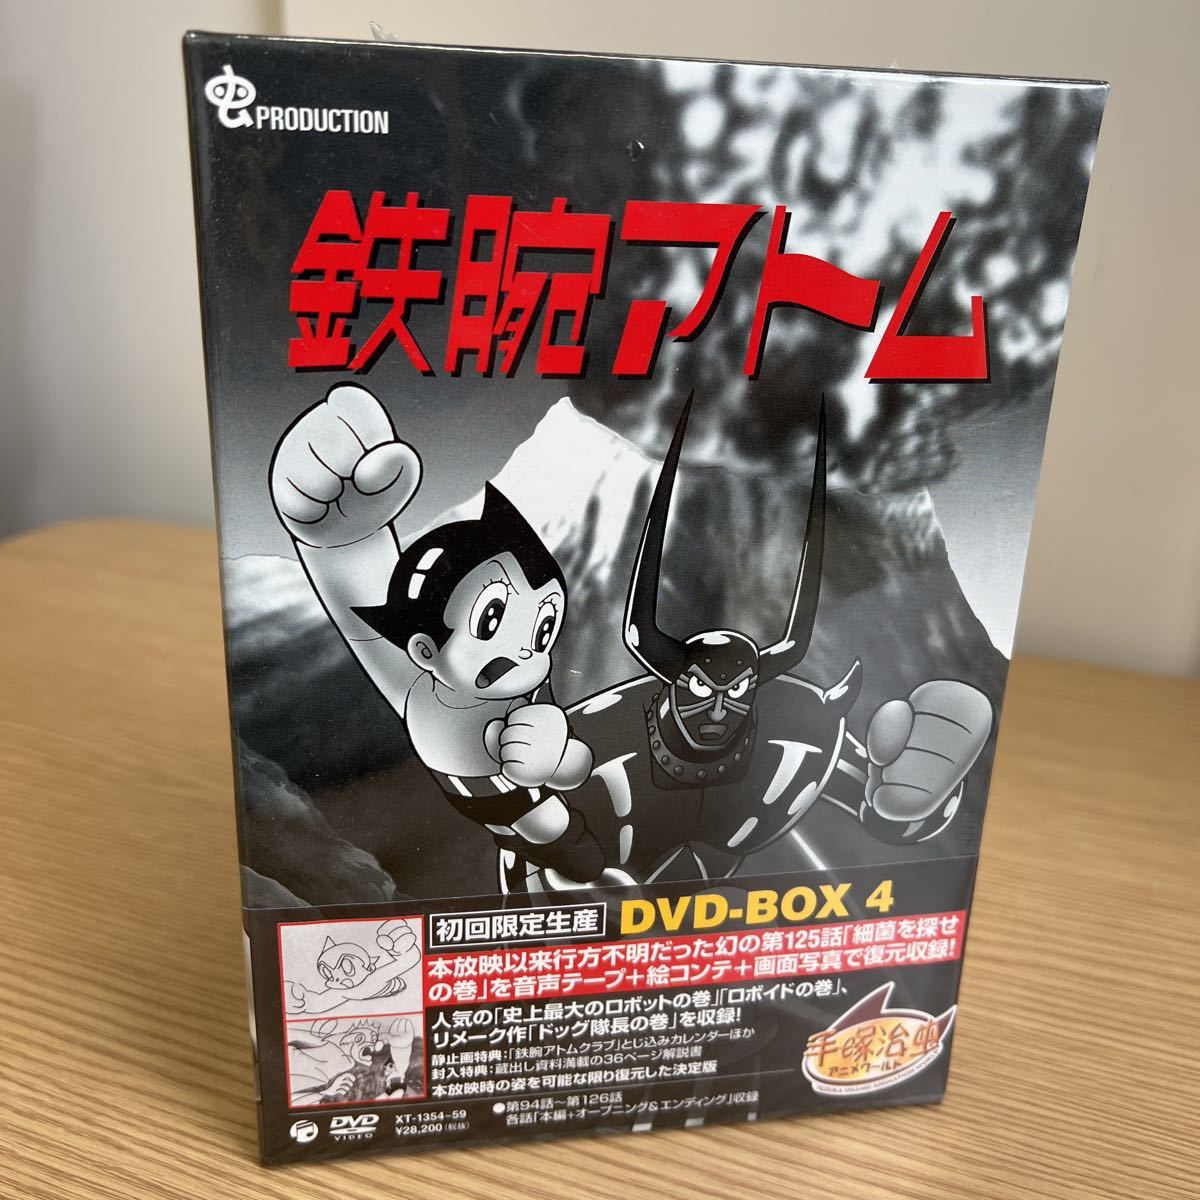 アストロボーイ・鉄腕アトム DVD-BOX 全4巻セット〈初回限定生産・4枚